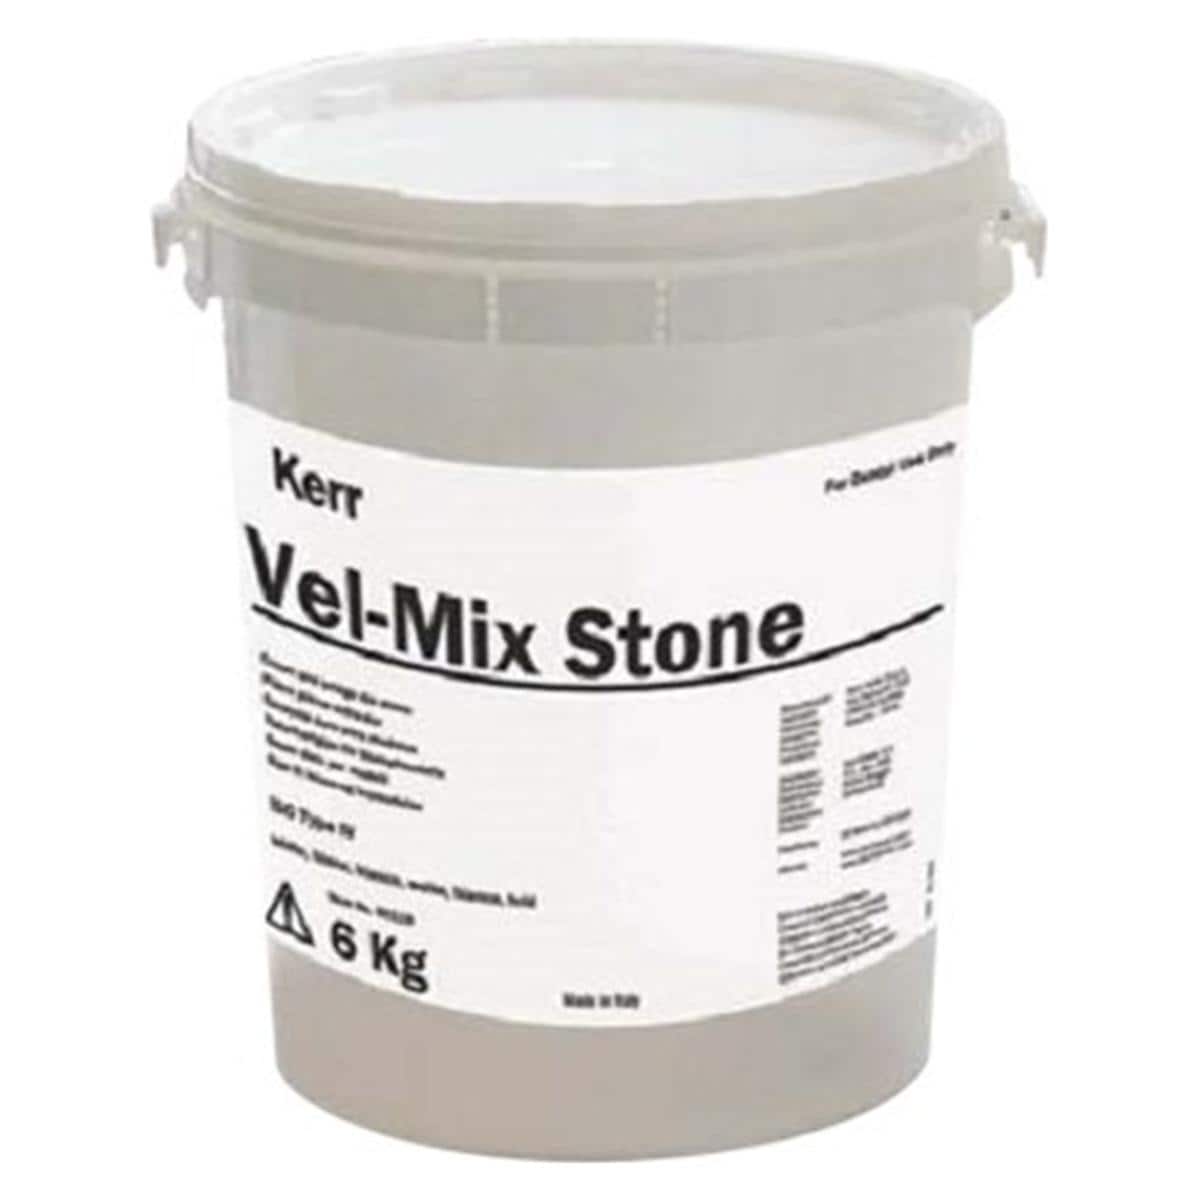 Vel-Mix Stone - Blanc, 6 kg